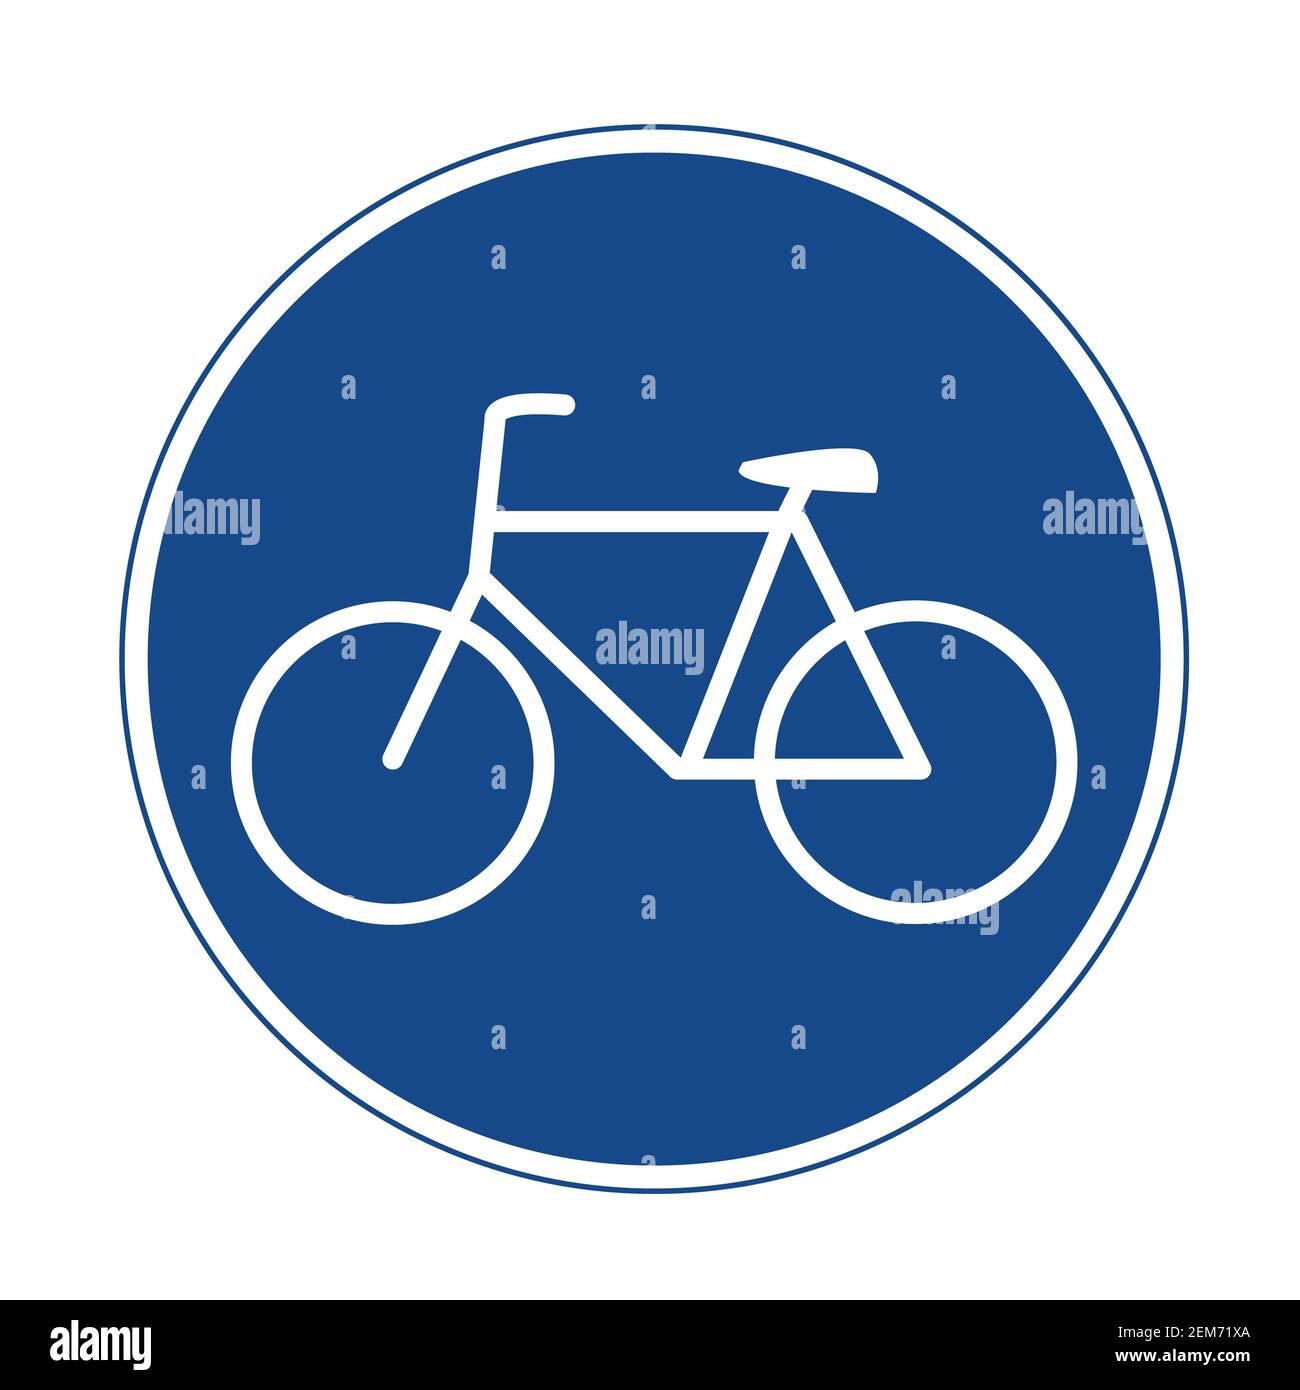 Icono de carril bici sobre fondo blanco. Estilo plano. Icono de carretera sólo para bicicletas para el diseño de su sitio web, logotipo, aplicación, interfaz de usuario. Símbolo de carril bici. Carril bici Foto de stock